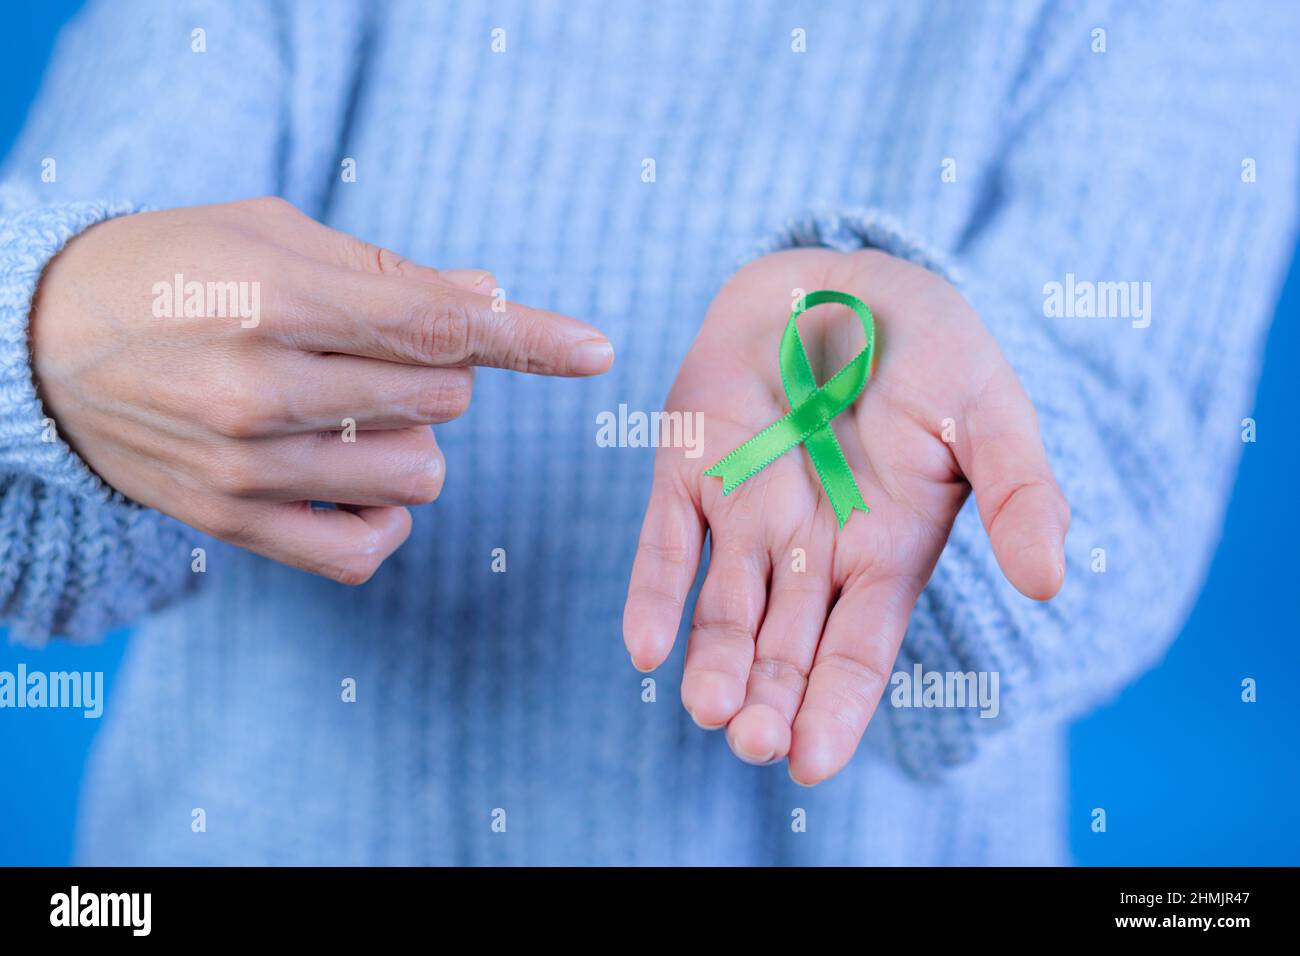 Grünes Band zur Unterstützung des Bewusstseins für Leber- und Nebennierenkrebs, menschliche Hände halten grünes Band. Weltkrebstag. Platz für Text Stockfoto